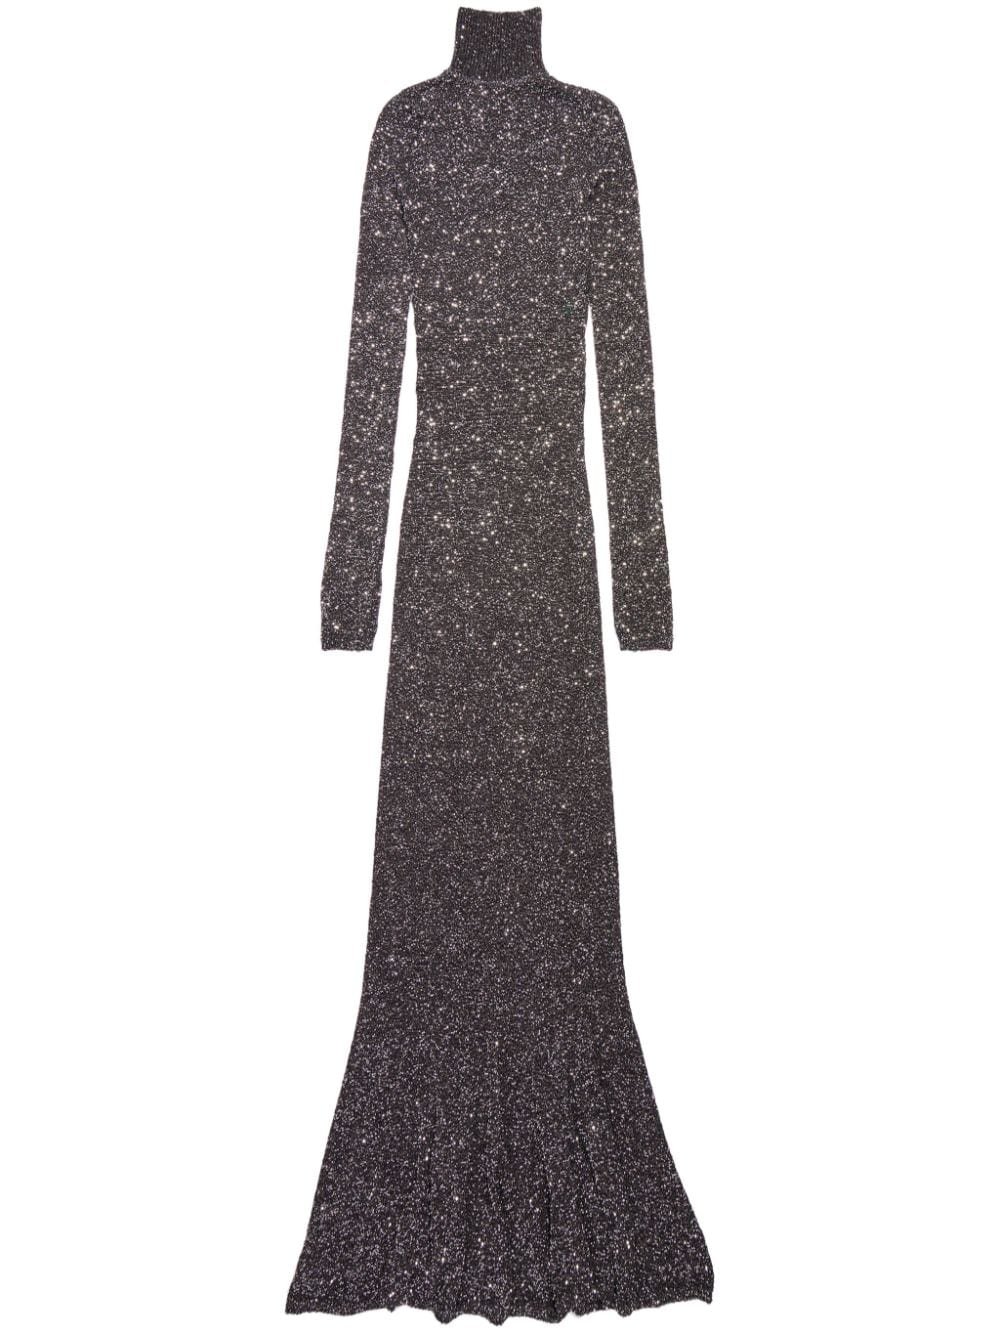 Balenciaga sparkled high-neck maxi dress - Black